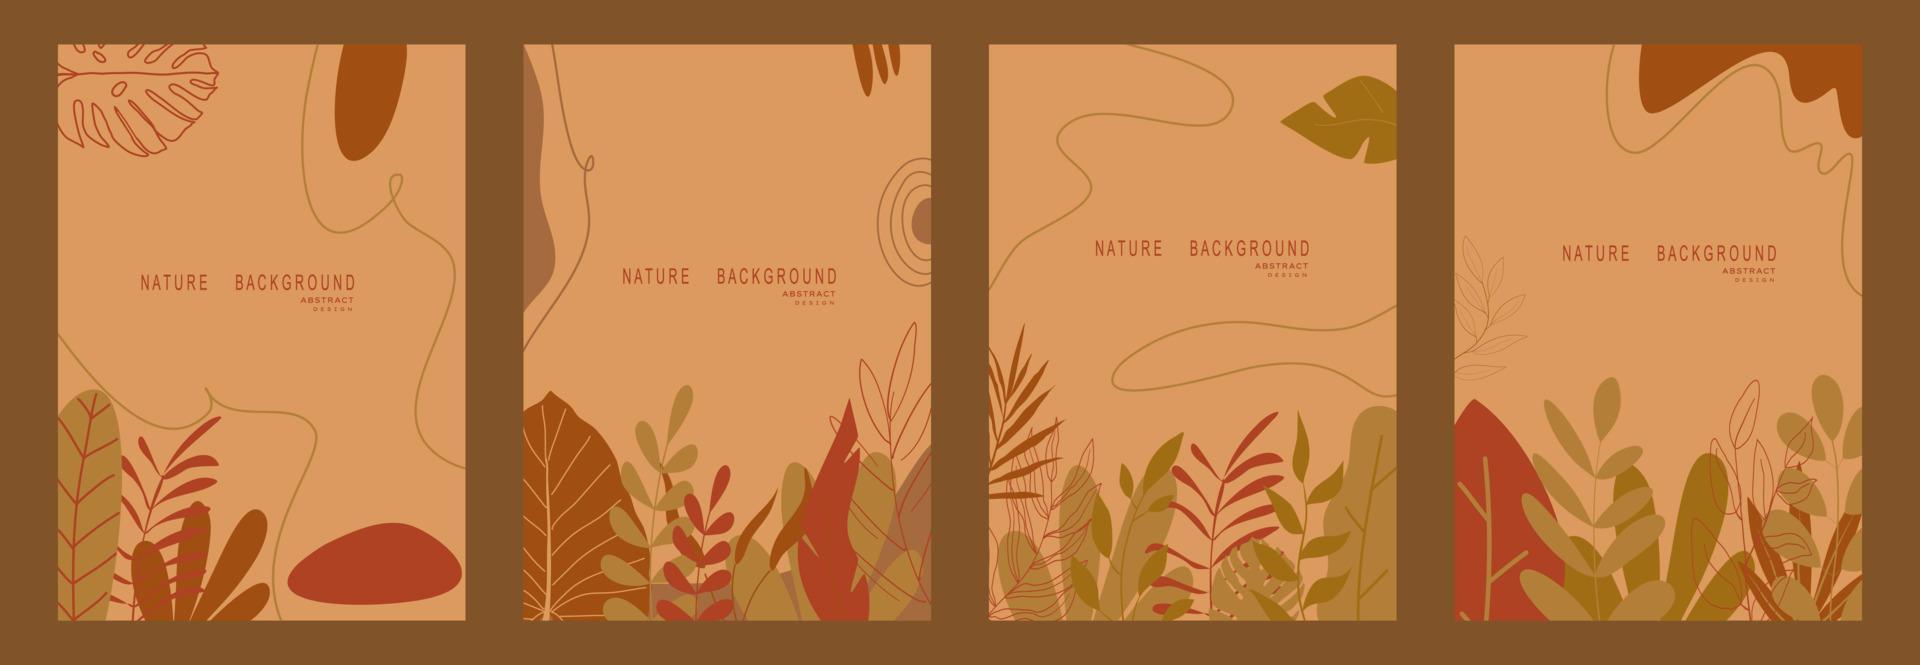 fond de nature abstraite avec des feuilles et des plantes. copier l'espace pour le texte. illustration vectorielle vecteur